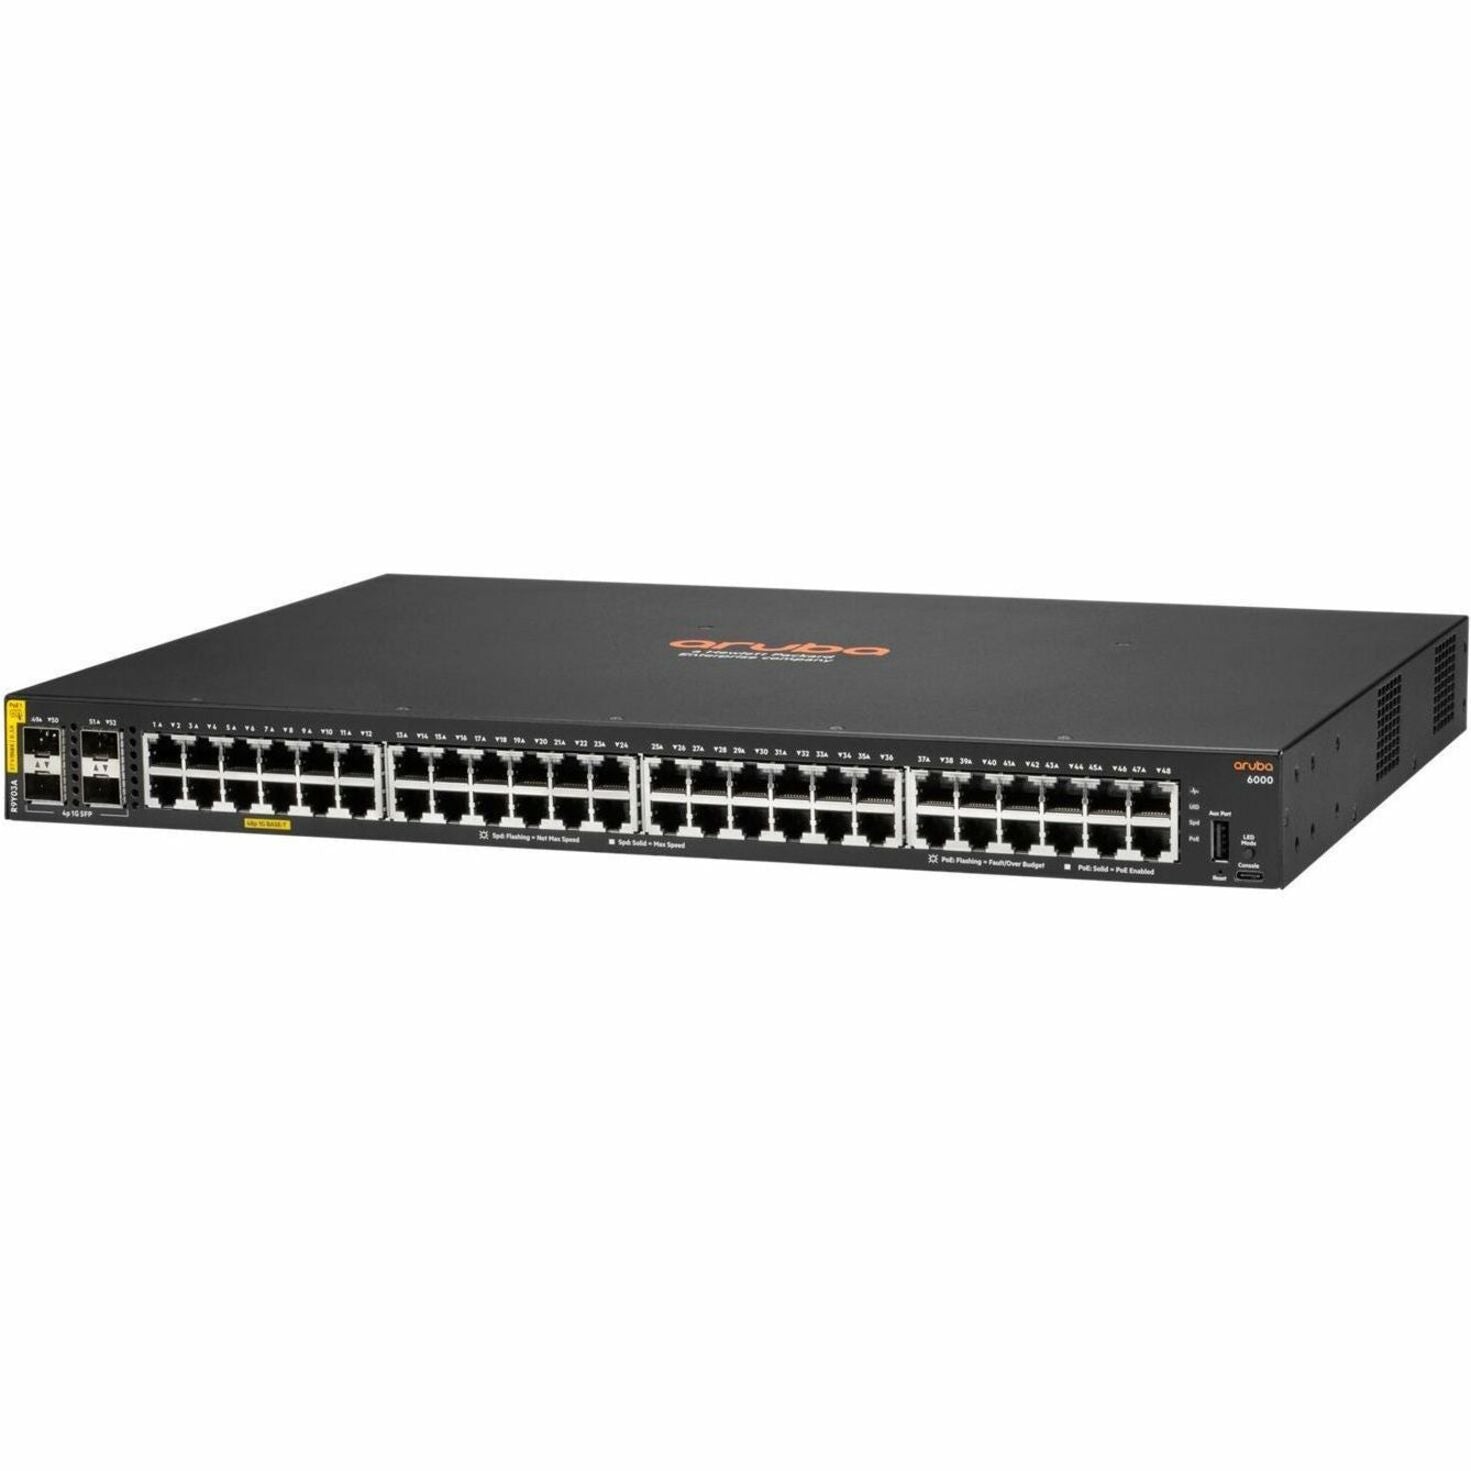 Διακόπτης Aruba 6000 48G CL4 4SFP 740W Επιχειρηματικός Διακόπτης Ethernet